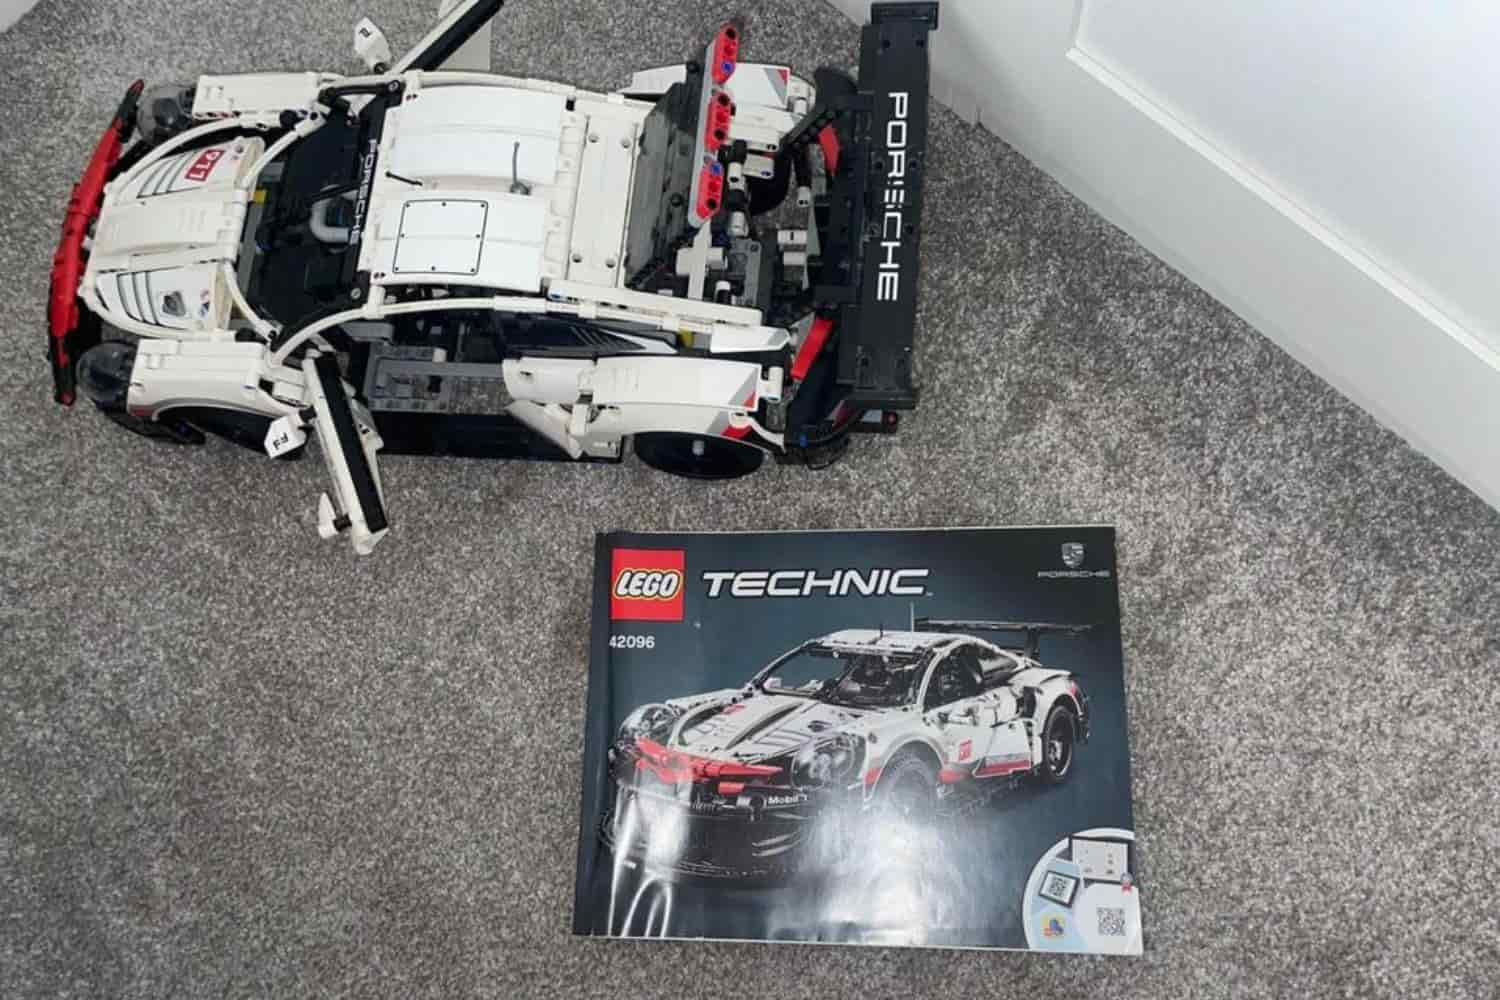 LEGO Technic Porsche 911 RSR Race Car 42096